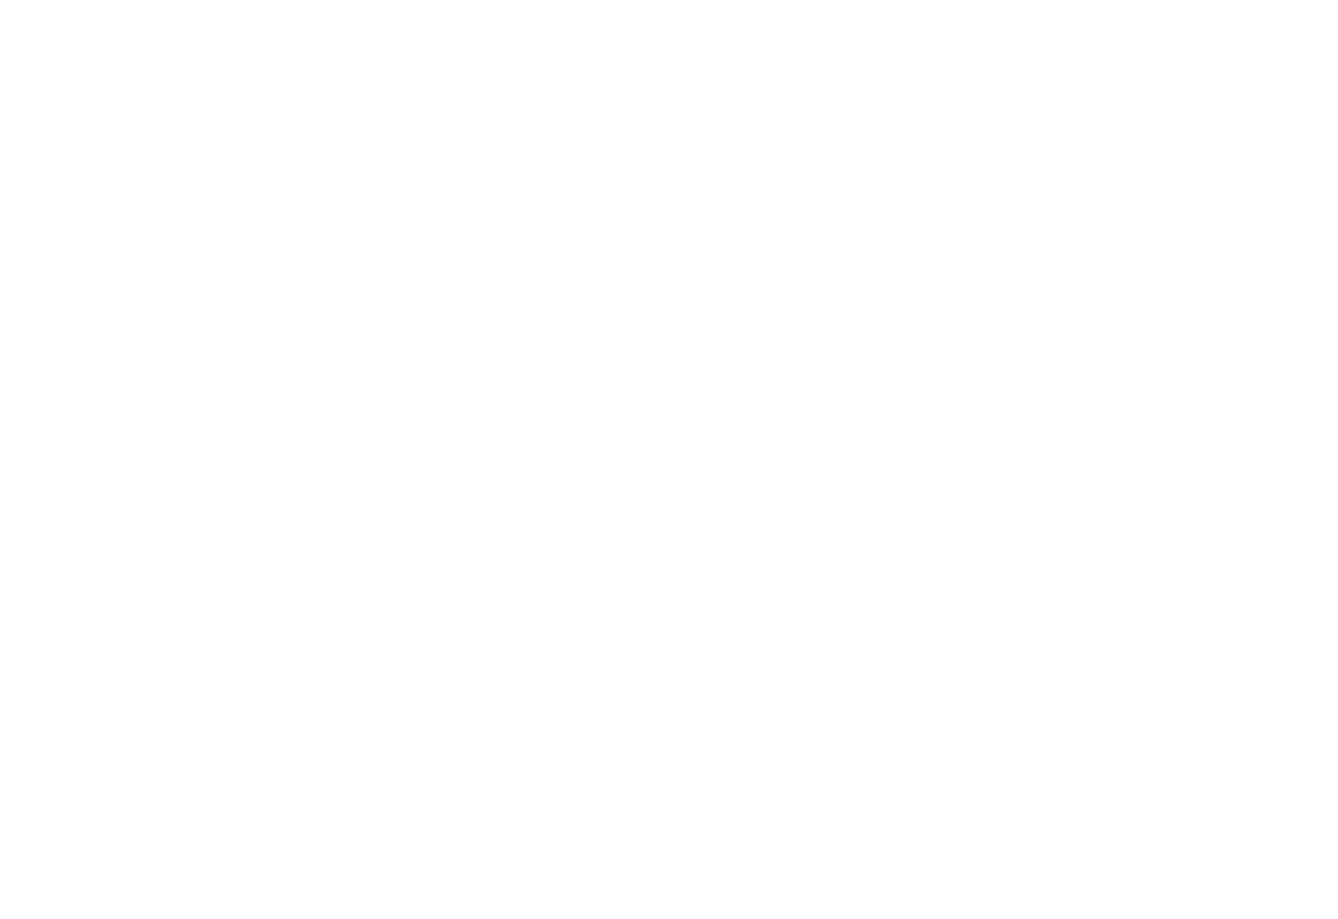 Engrenar Jr. – Empresa Júnior de Engenharia Mecânica da UFSCar